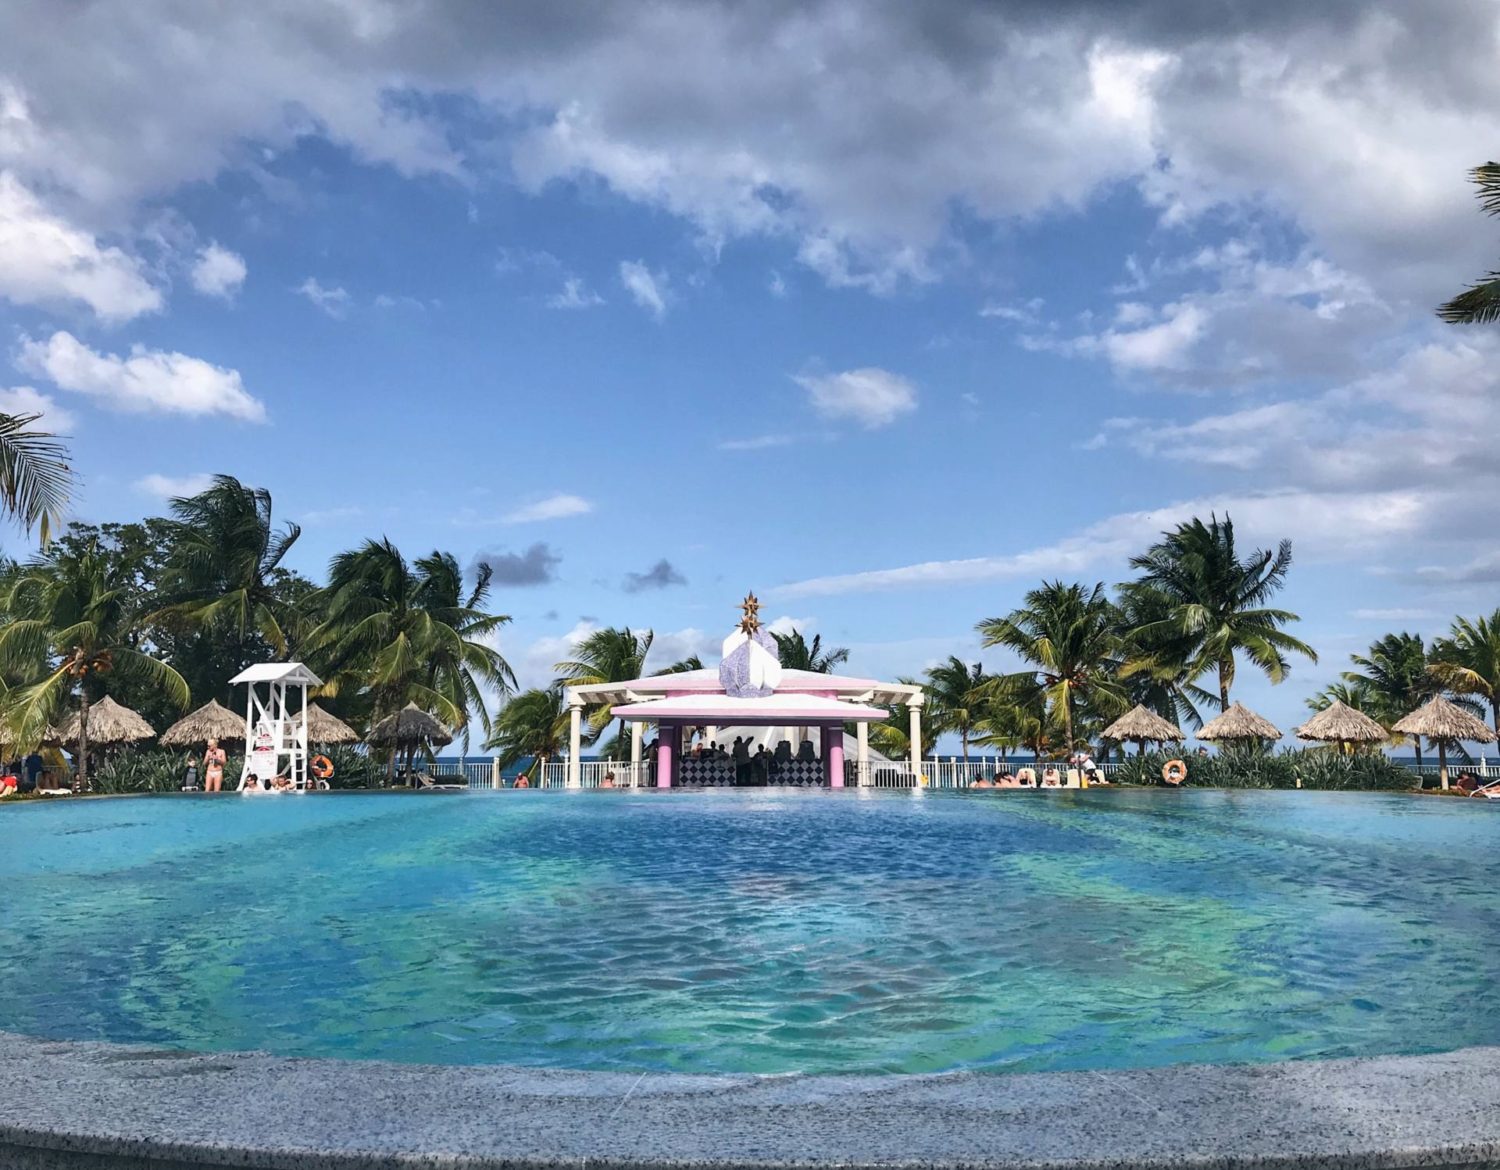 Our Jamaican Holiday: Riu Ocho Rios Jamaica Hotel Review